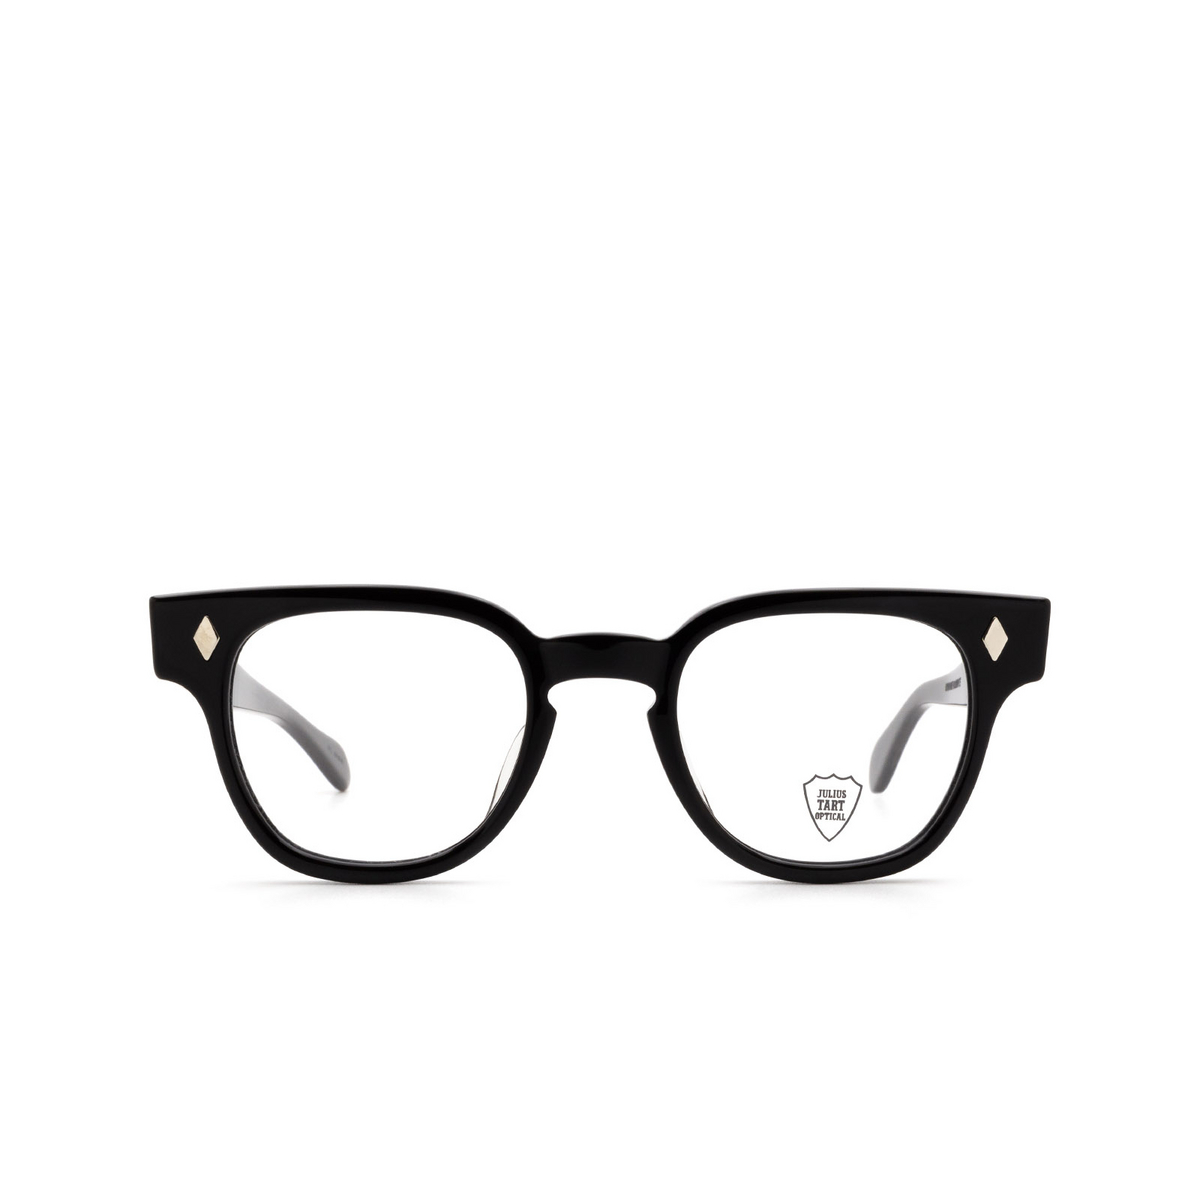 Eyeglasses Julius Tart Optical BRYAN